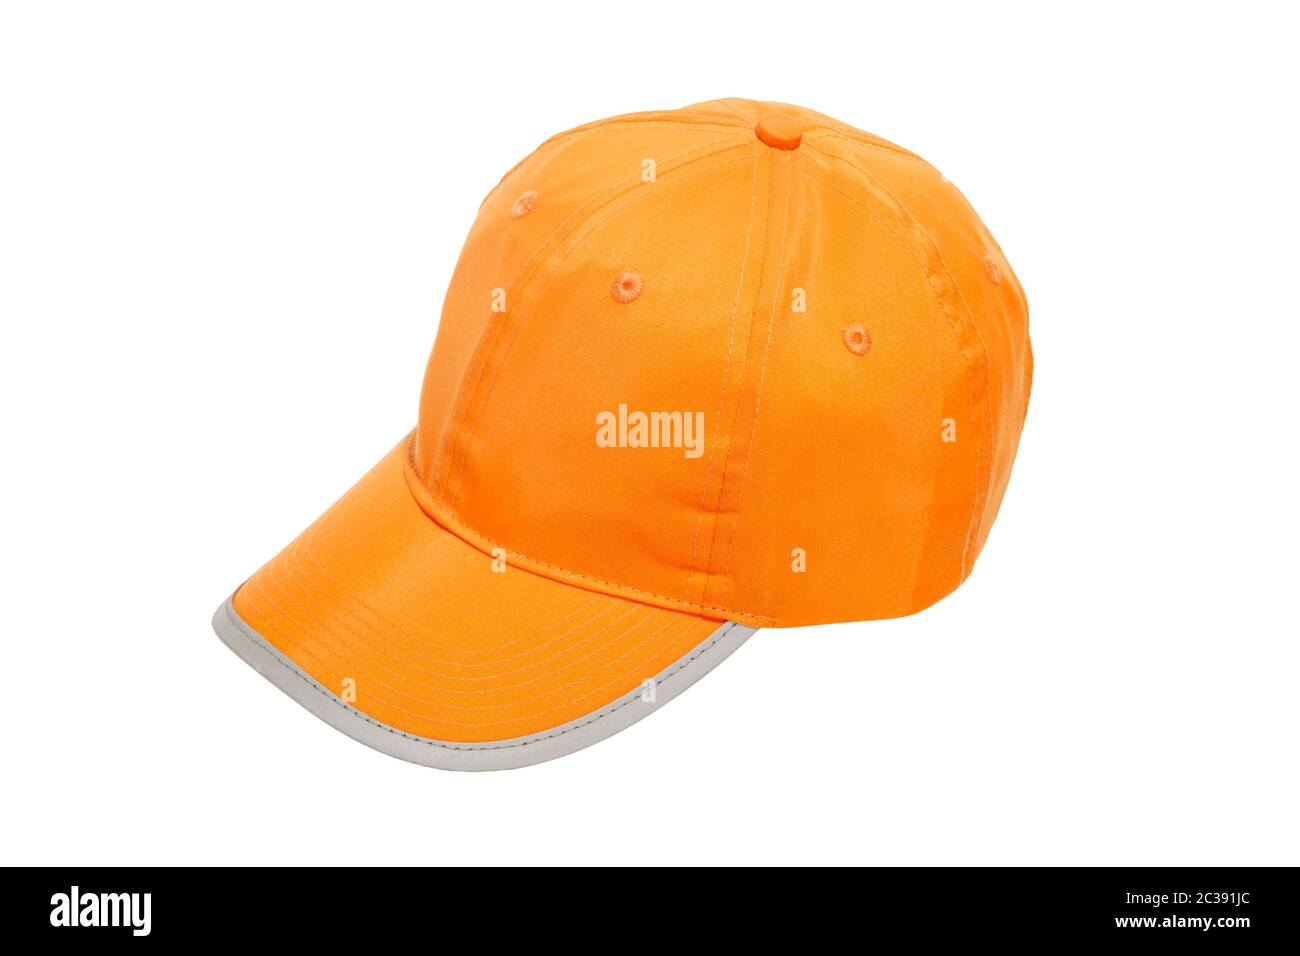 baseball cap orange with safety reflector stripe isolated on white background Stock Photo